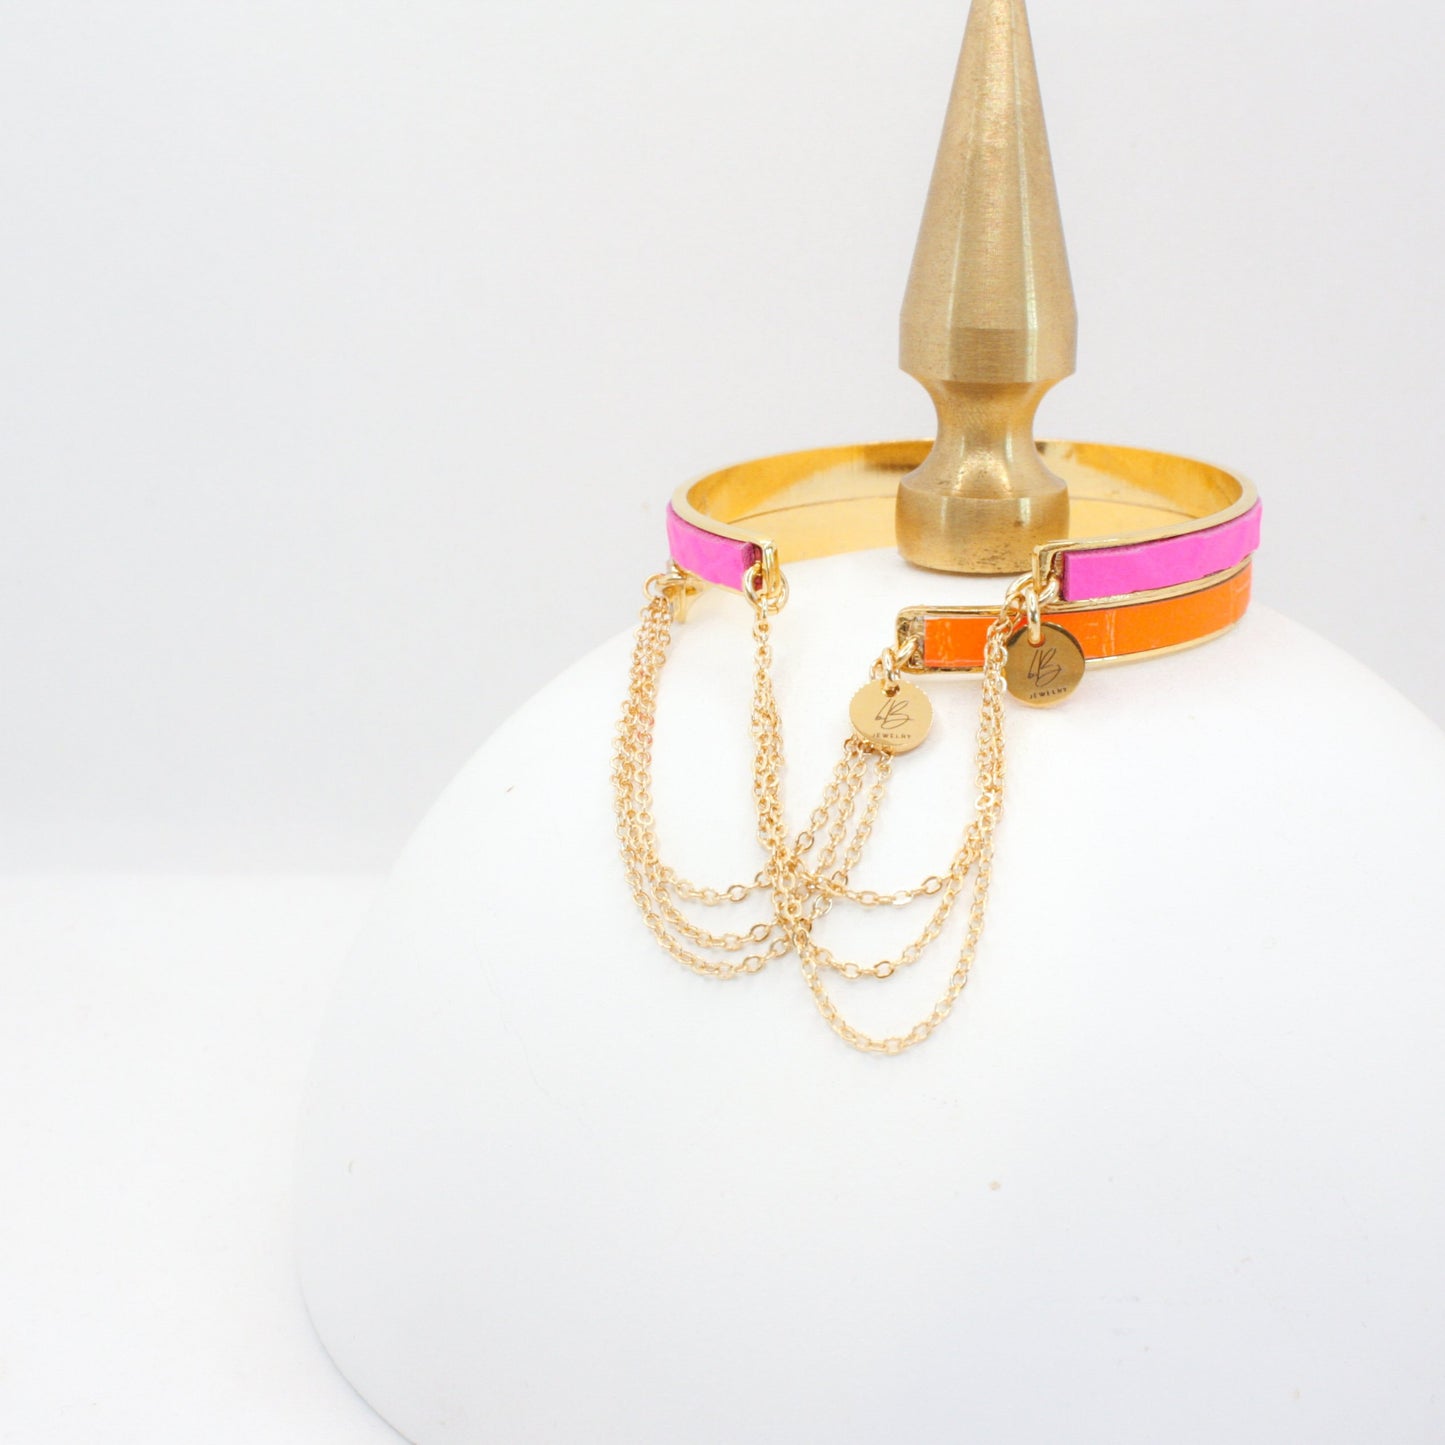 Bijoux Leather & Chain Cuff Bracelet : Neon Orange (1/4")